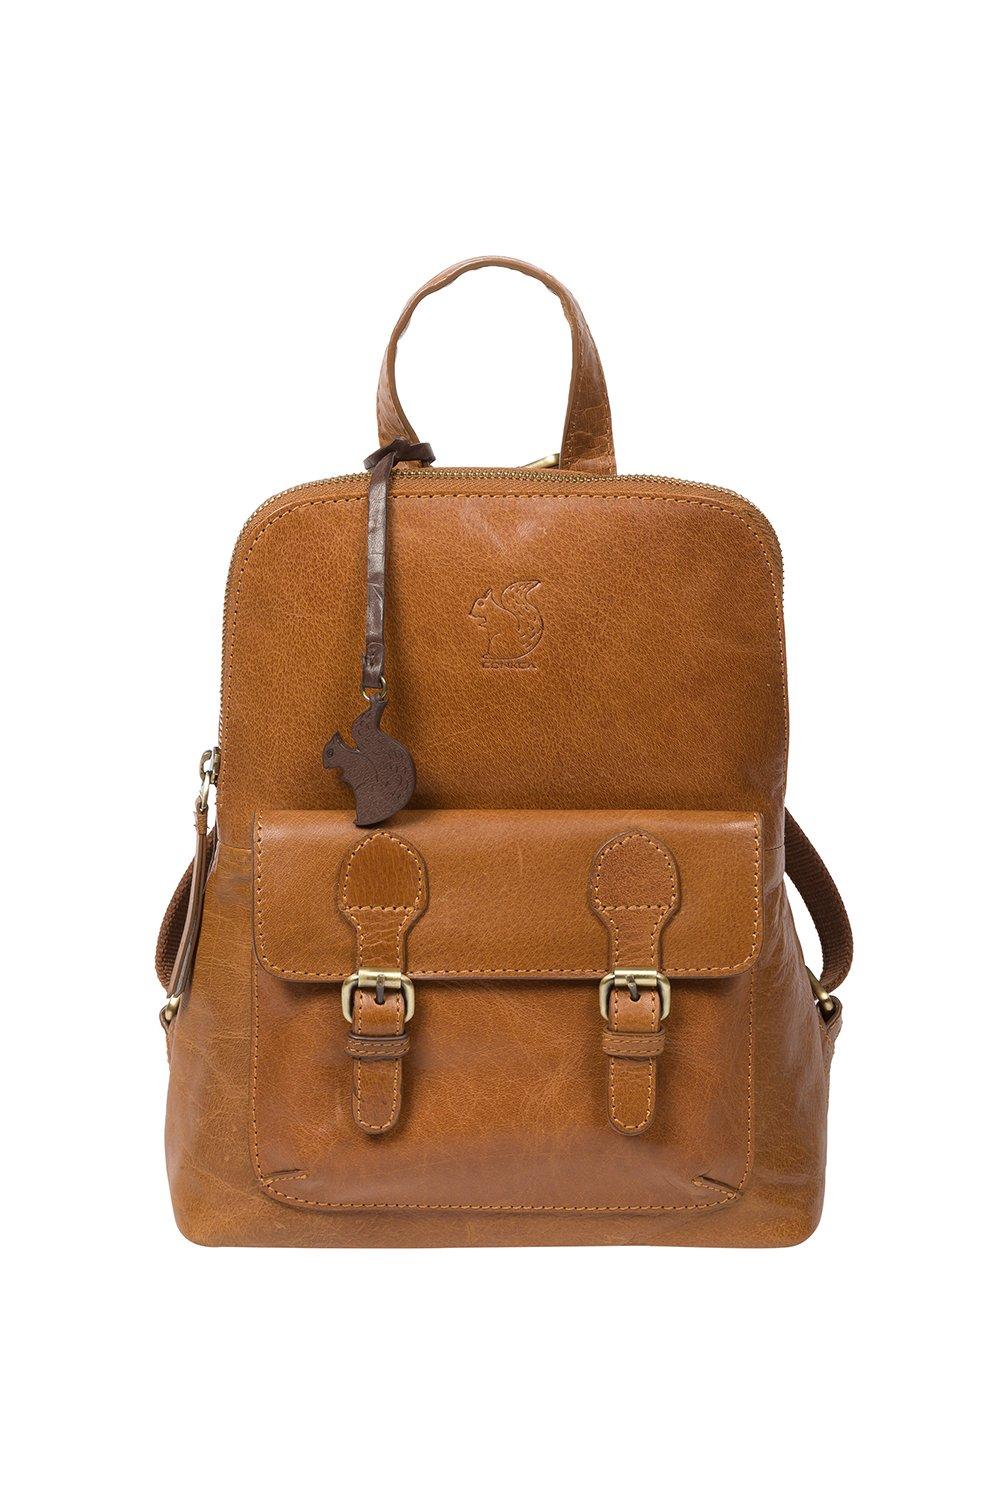 Кожаный рюкзак Кендал Conkca London, коричневый